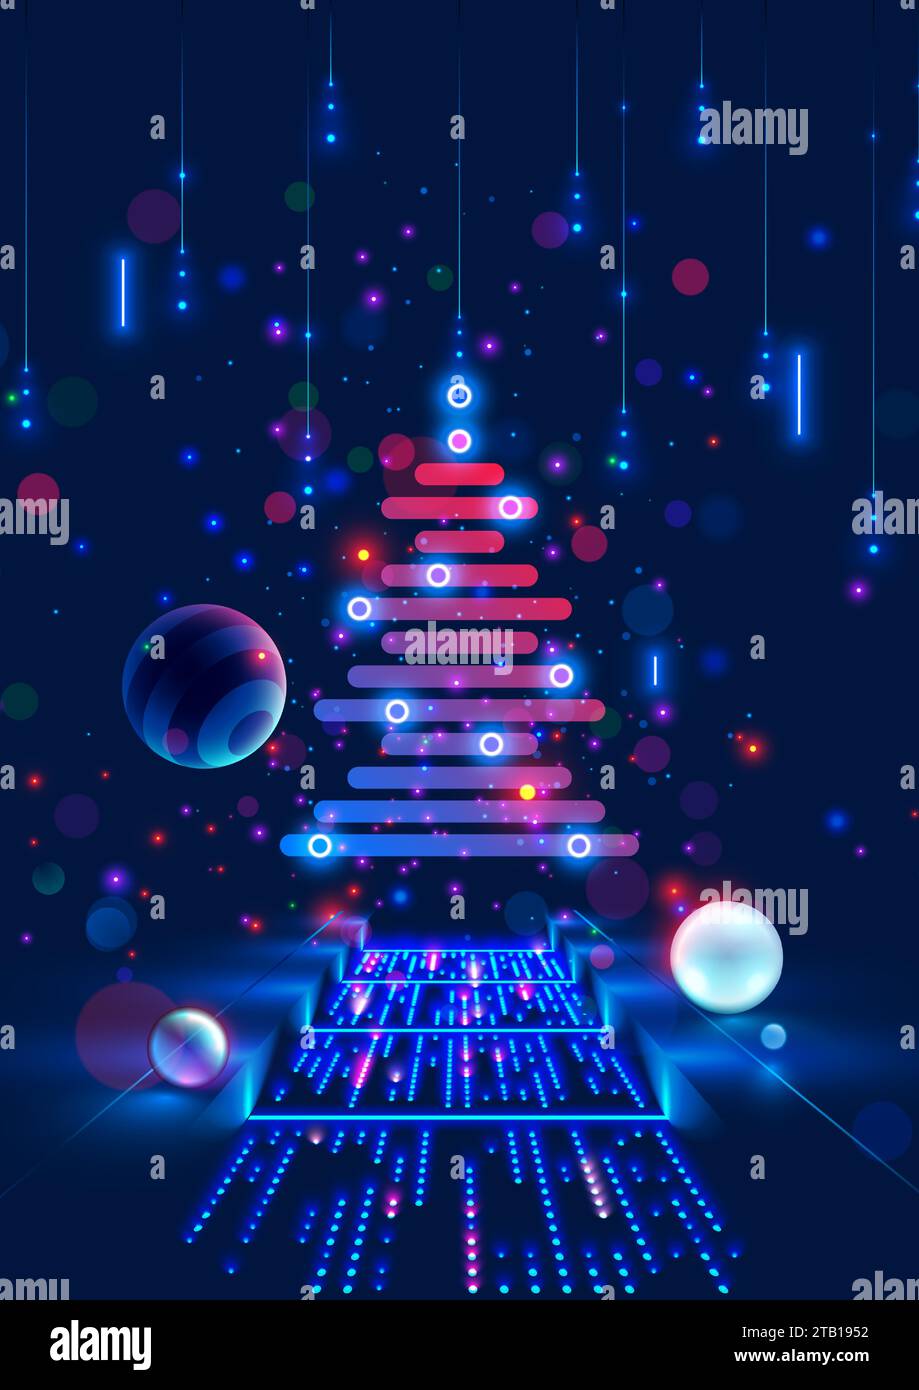 Weihnachtsbaum auf Weihnachtsposter im Computertechnik-Stil. Neujahr, frohe weihnachten Glückwunschkarte im Computerdesign. Vorlage Chri Stock Vektor